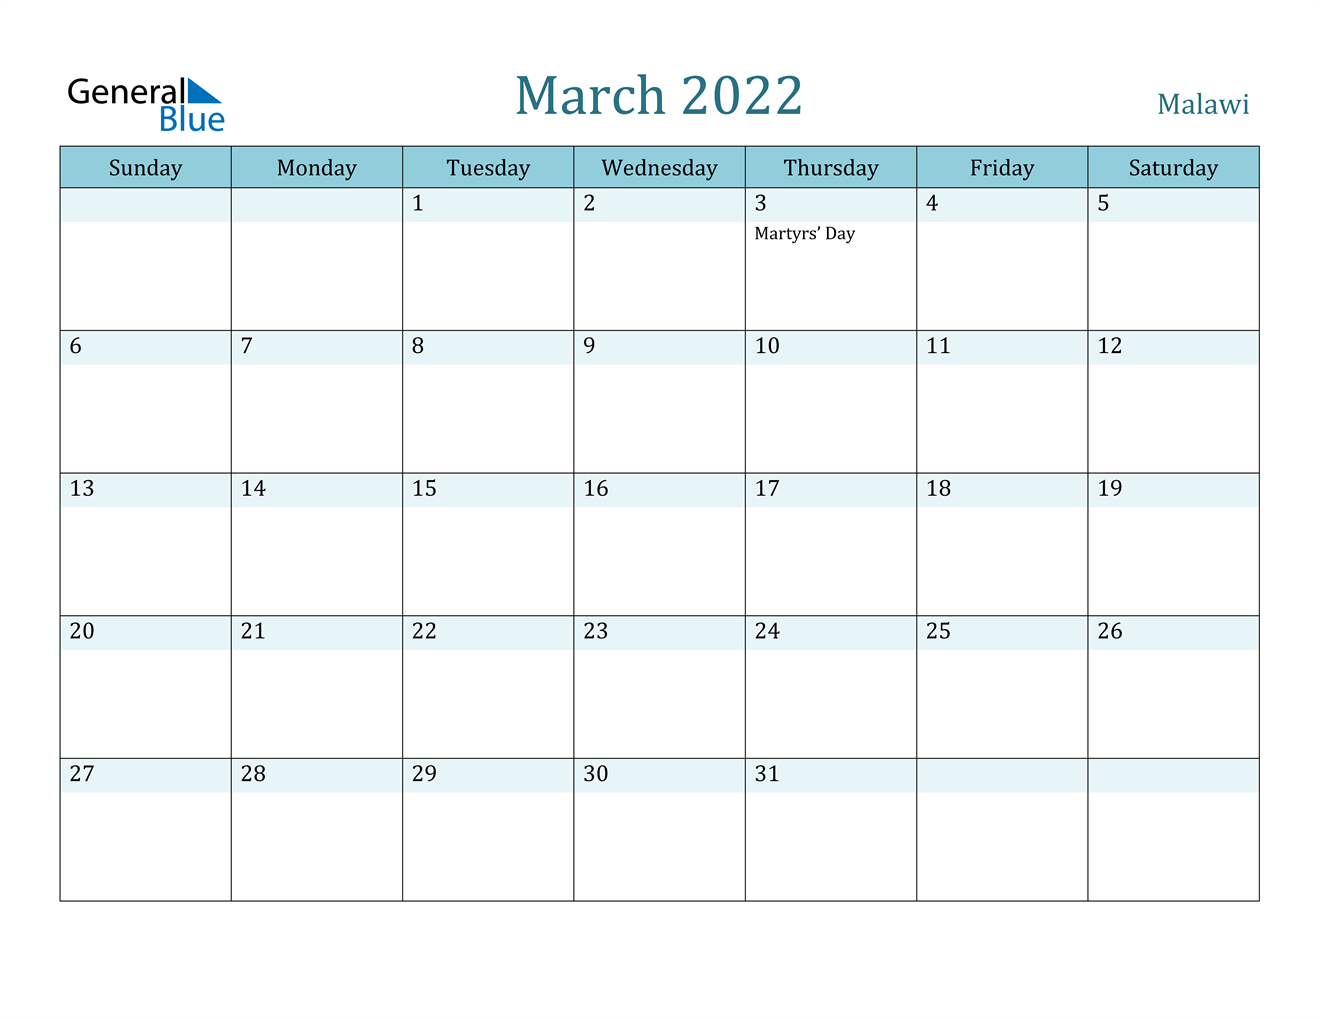 March 2022 Calendar - Malawi